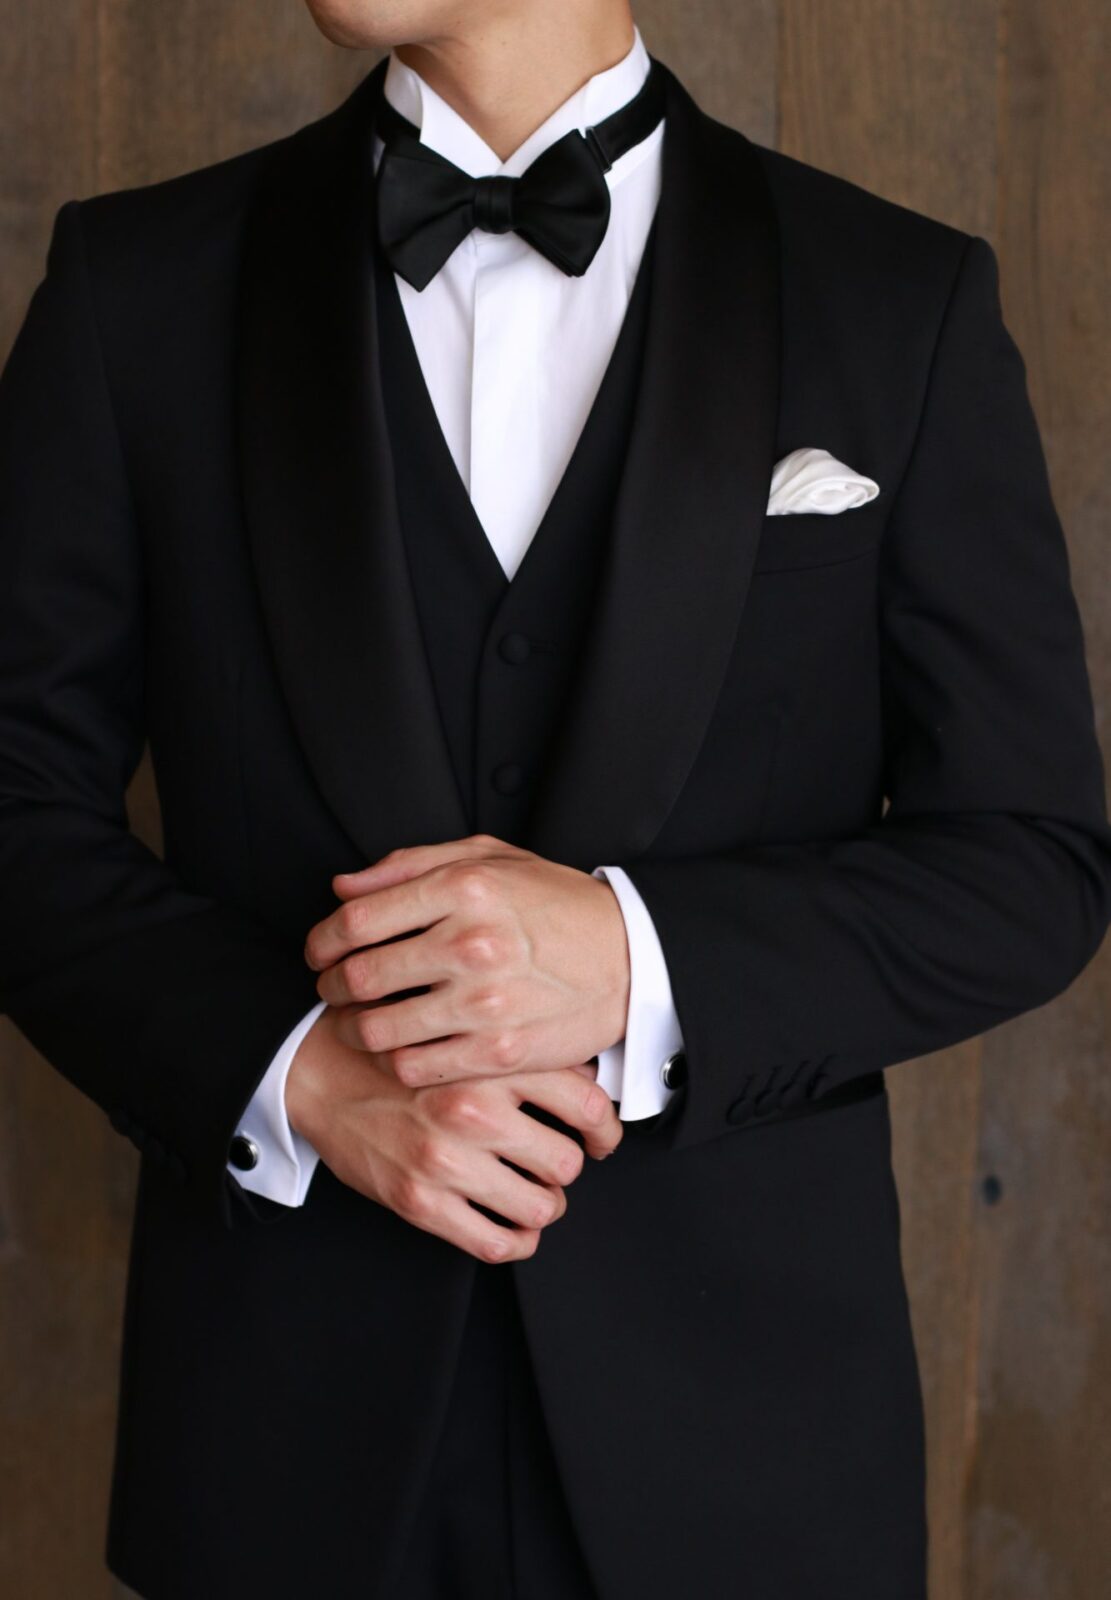 ブラックタイと呼ばれる男性の正礼装は紳士の嗜みであり、タキシードだけでなくタイやチーフ、カフリンクス、シューズを身に着けていただくことでフォーマルな着こなしとなります